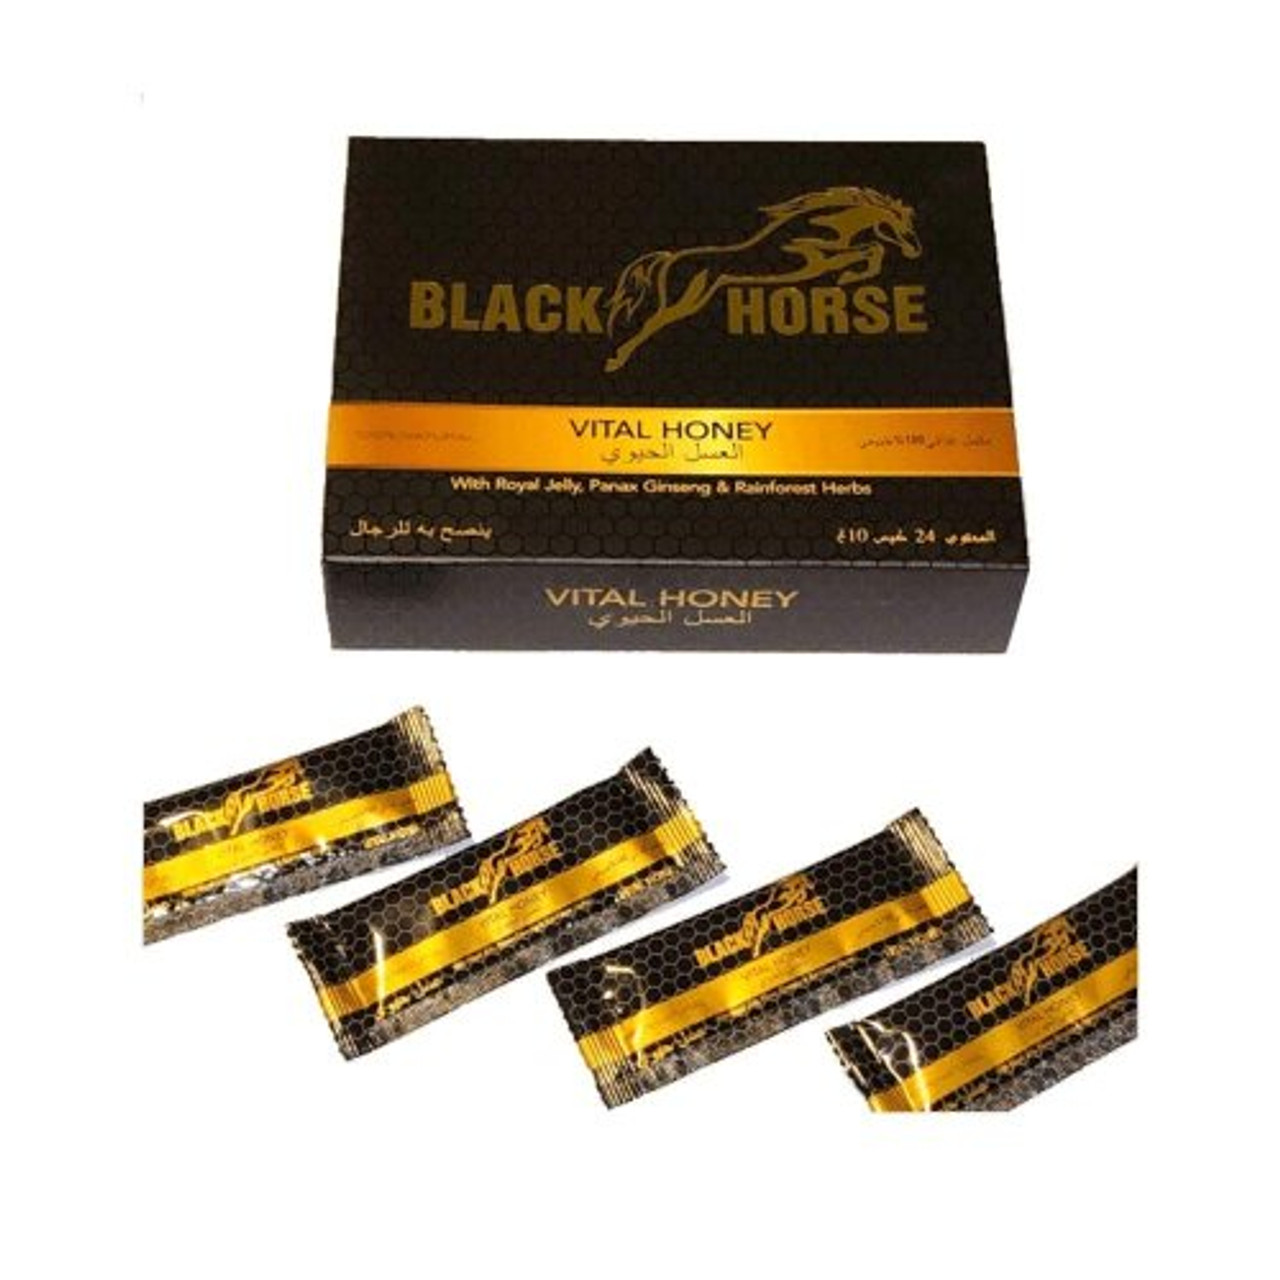 2 Packs of Black Horse Royal Honey (24 Sachets - 10 G), The Performer